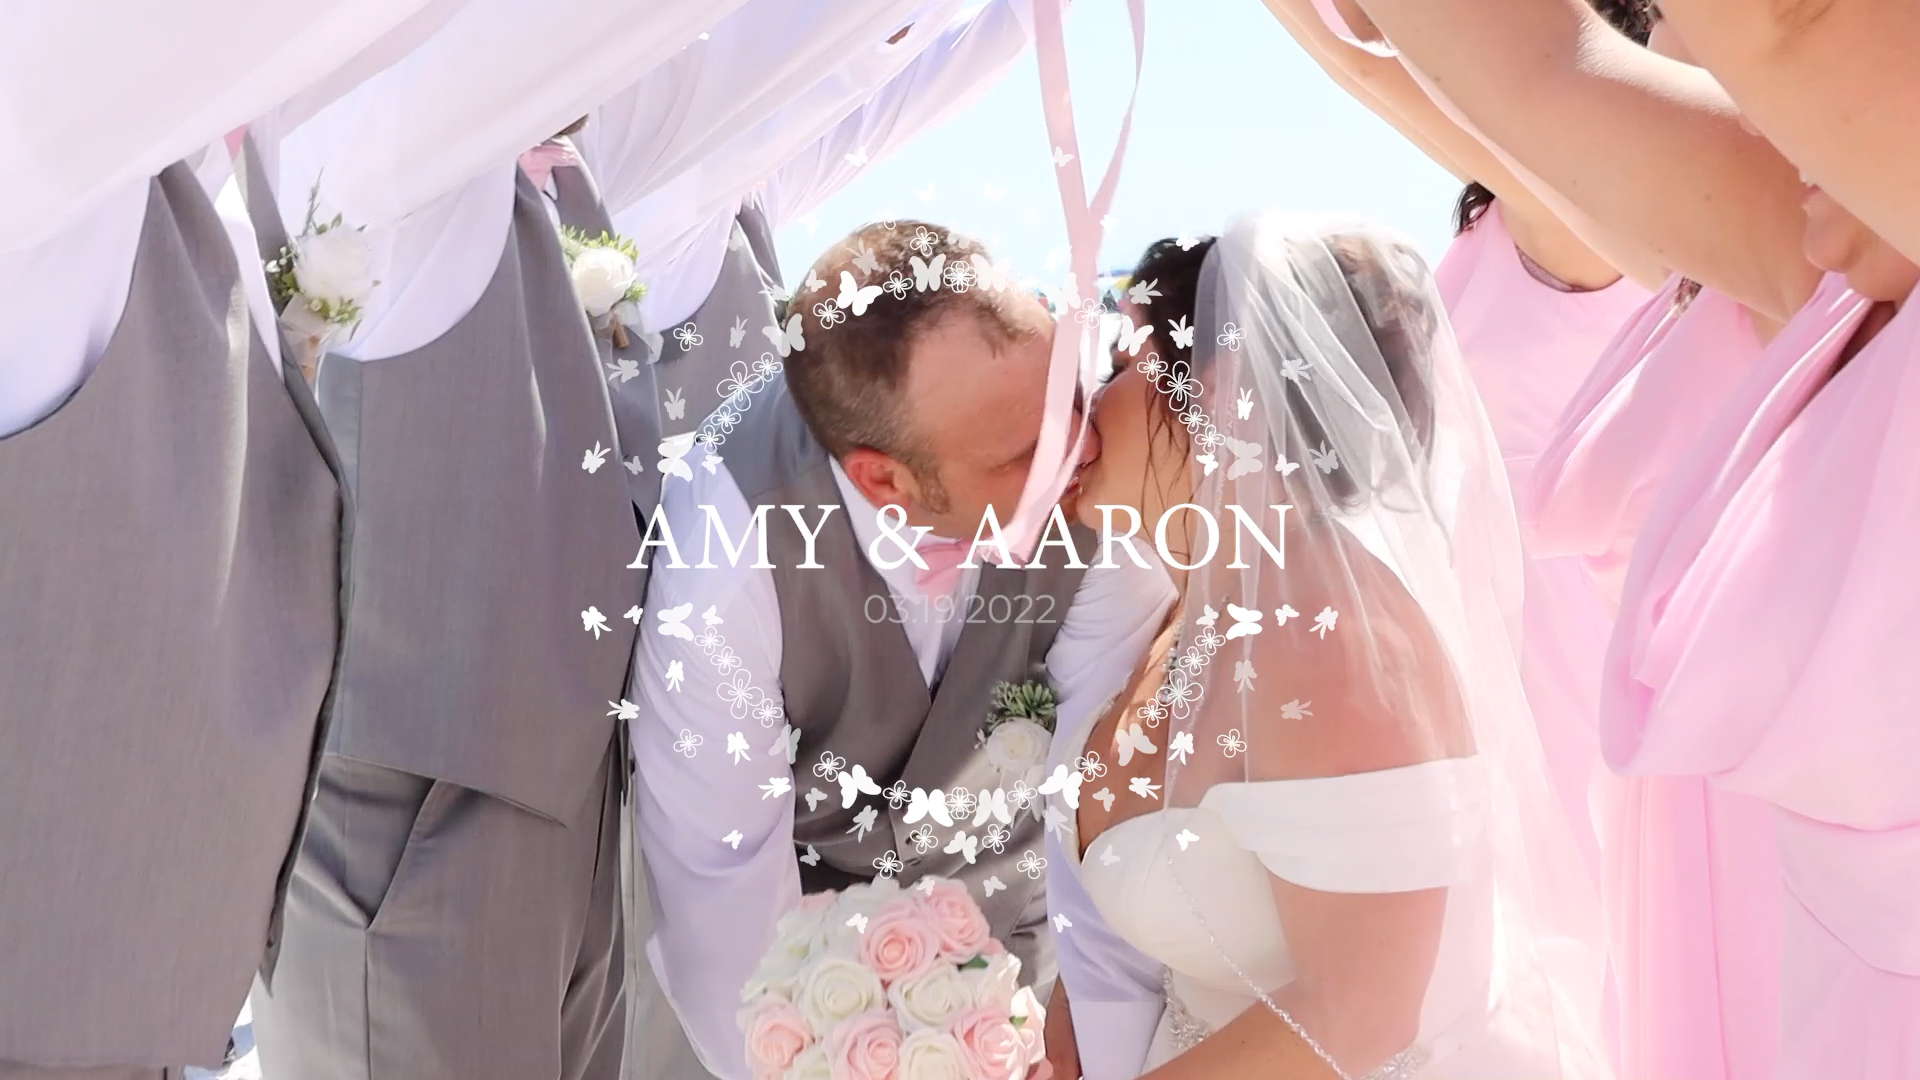 Amy & Aaron Wedding – Trailer